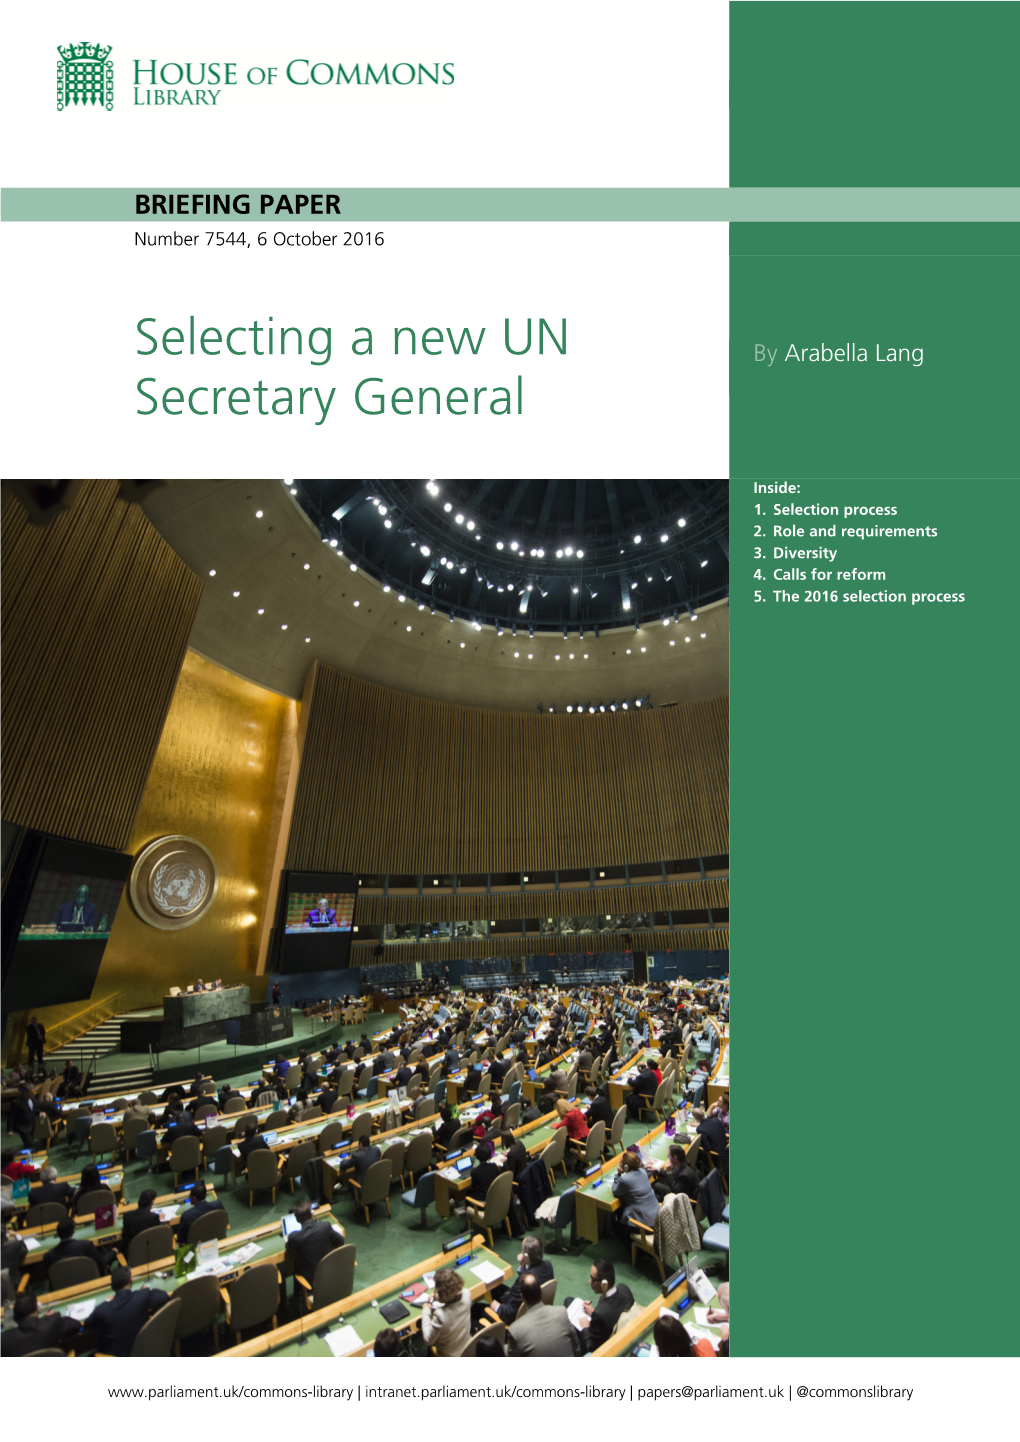 Selecting a New UN Secretary General